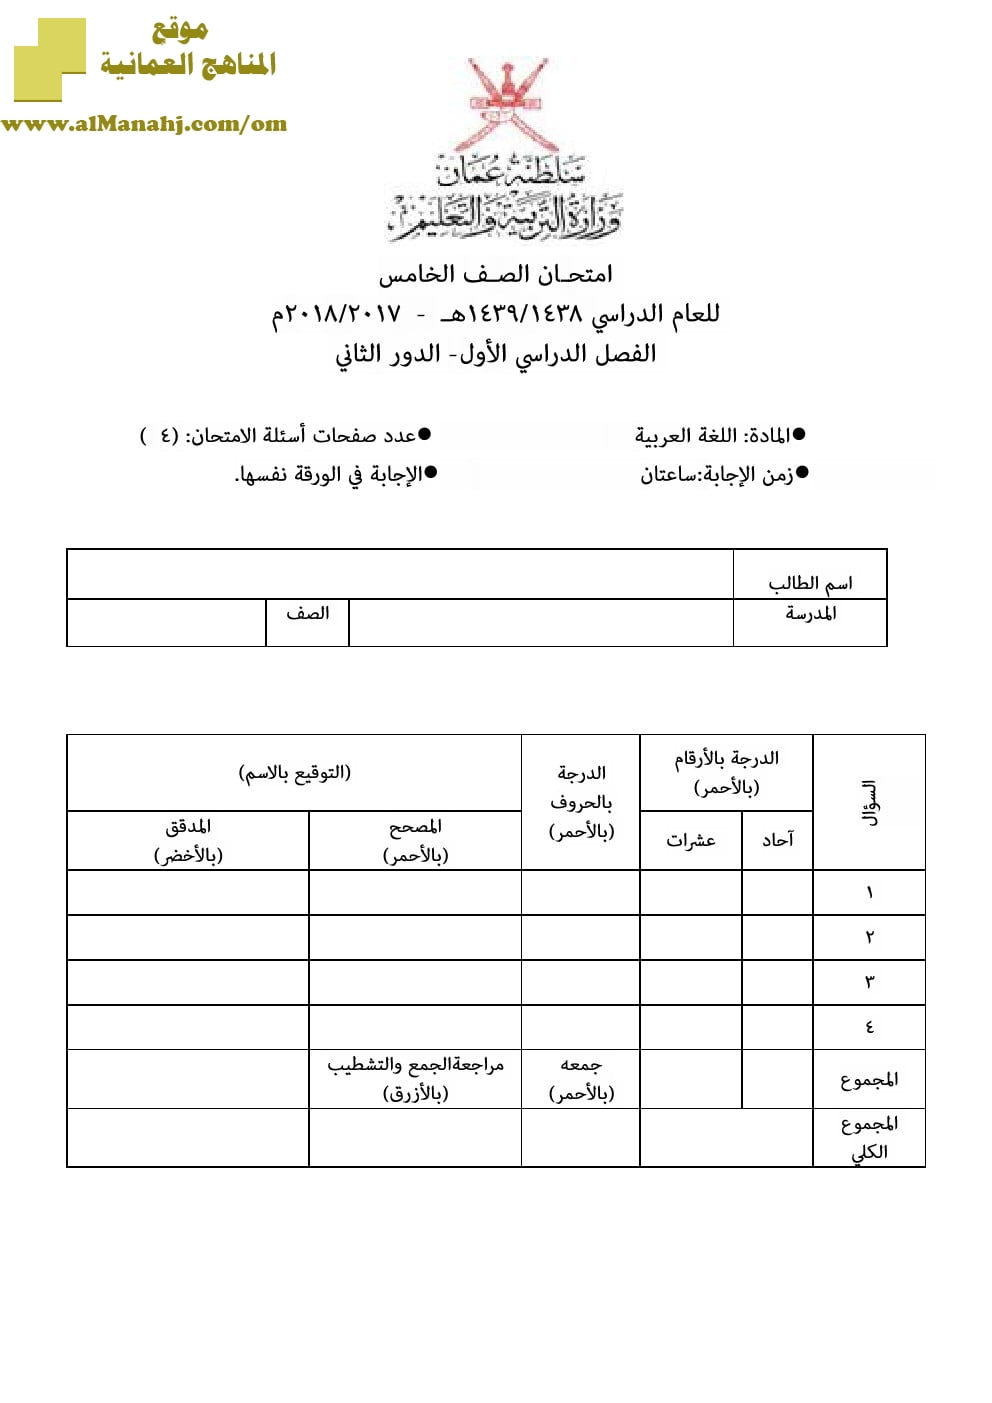 أسئلة وإجابة الامتحان الرسمي للفصل الدراسي الأول الدور الأول والثاني (لغة عربية) الخامس